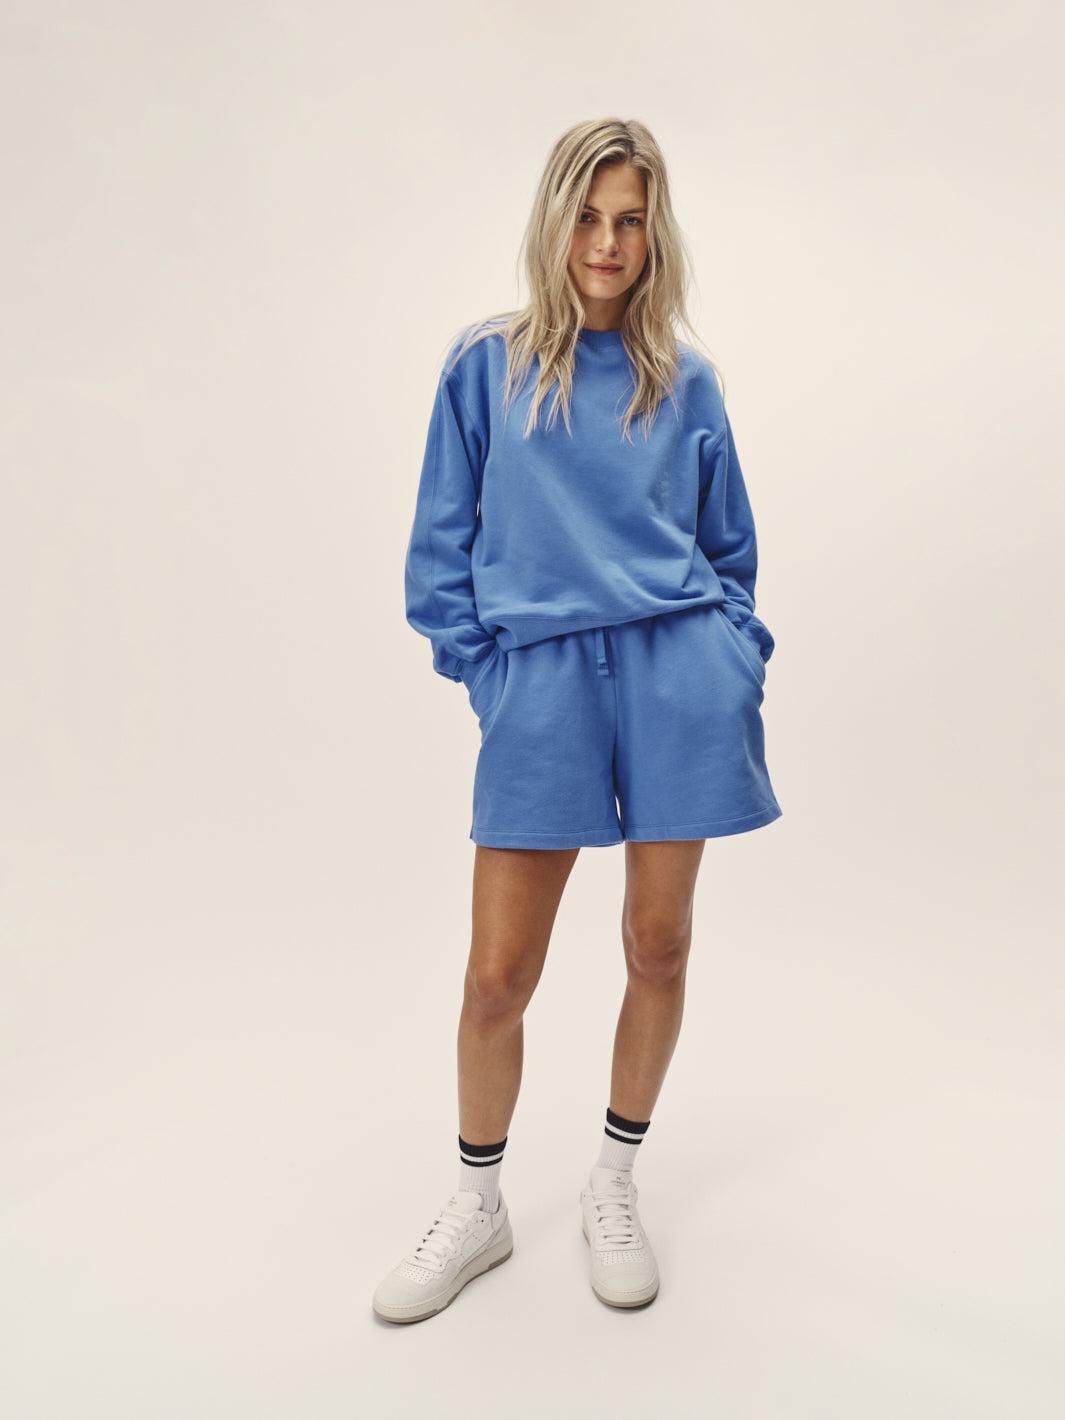 Frauen Rundhals Sweatshirt oversized blau reine Bio Baumwolle hergestellt in Portugal